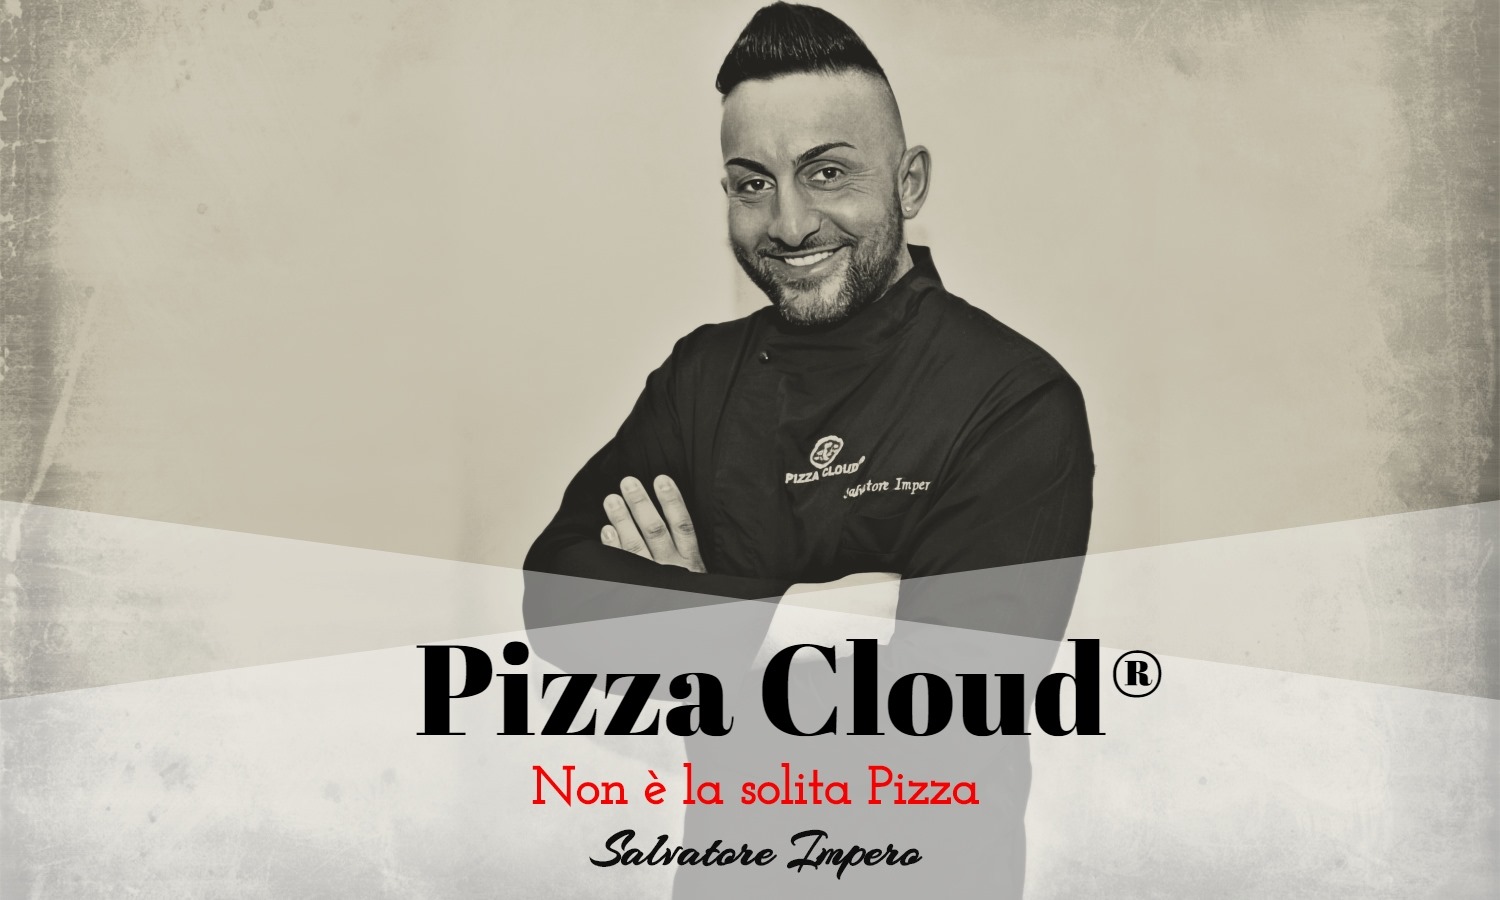 Pizza Cloud “Non è la solita Pizza” 